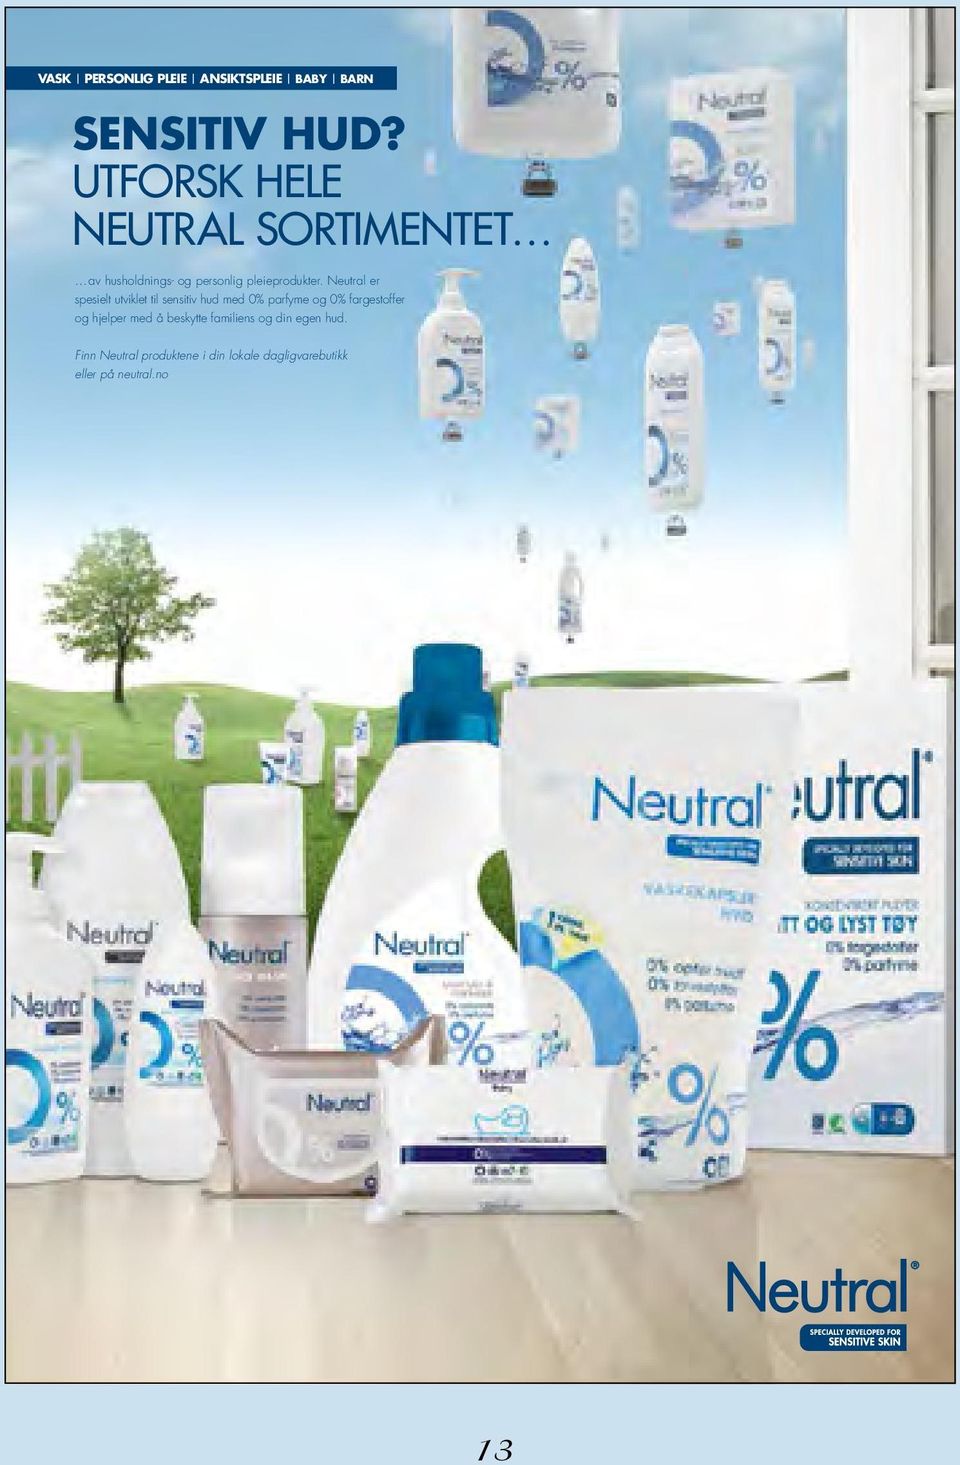 Neutral er spesielt utviklet til sensitiv hud med 0% parfyme og 0% fargestoffer og